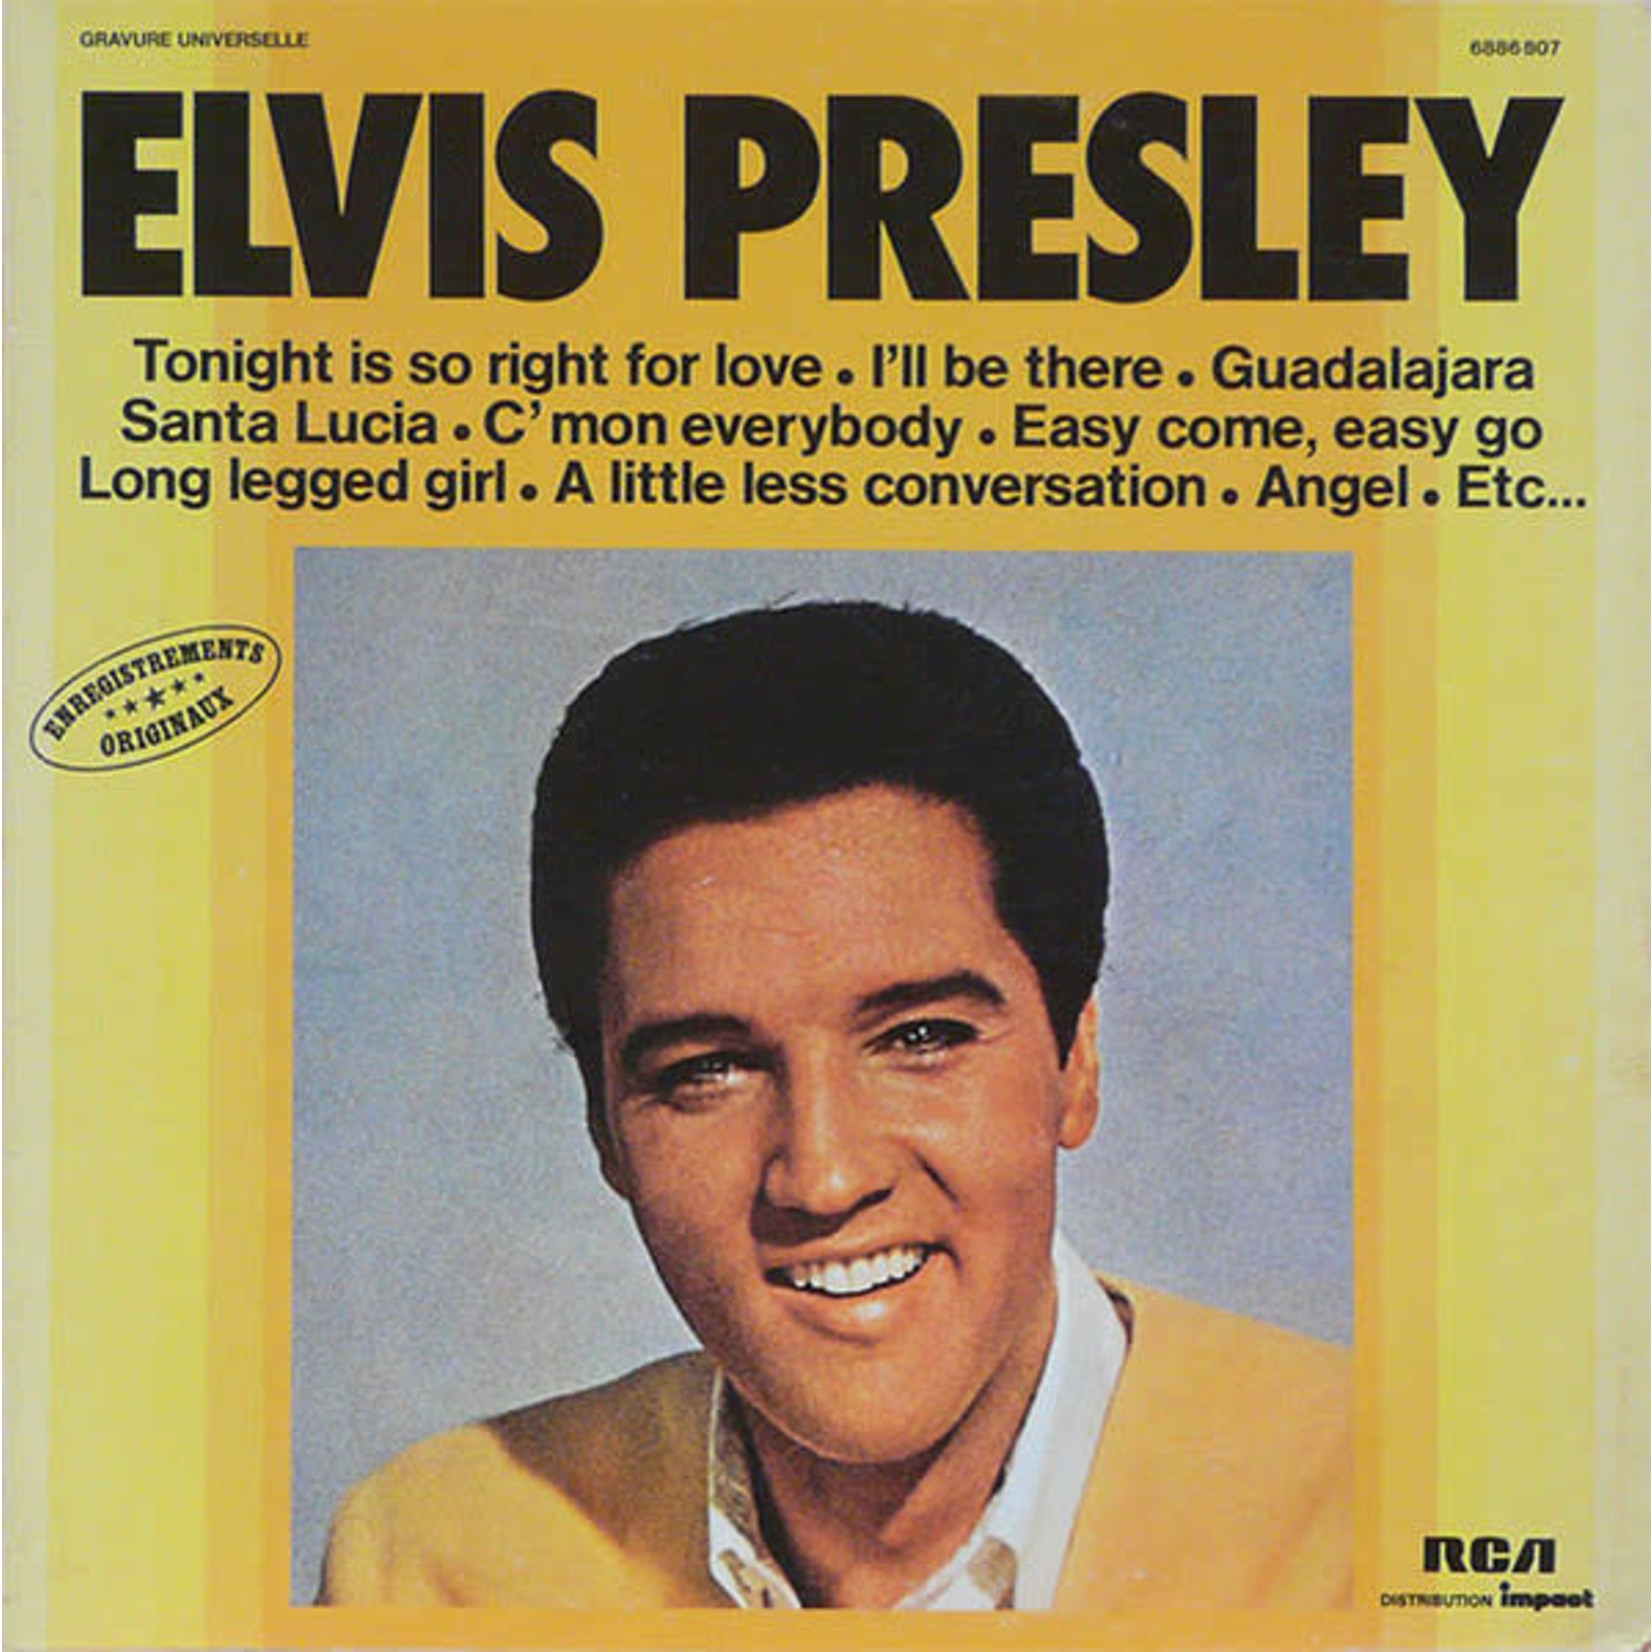 Elvis Presley Elvis Presley – Elvis Presley (VG, 1977, 6886 807, France)